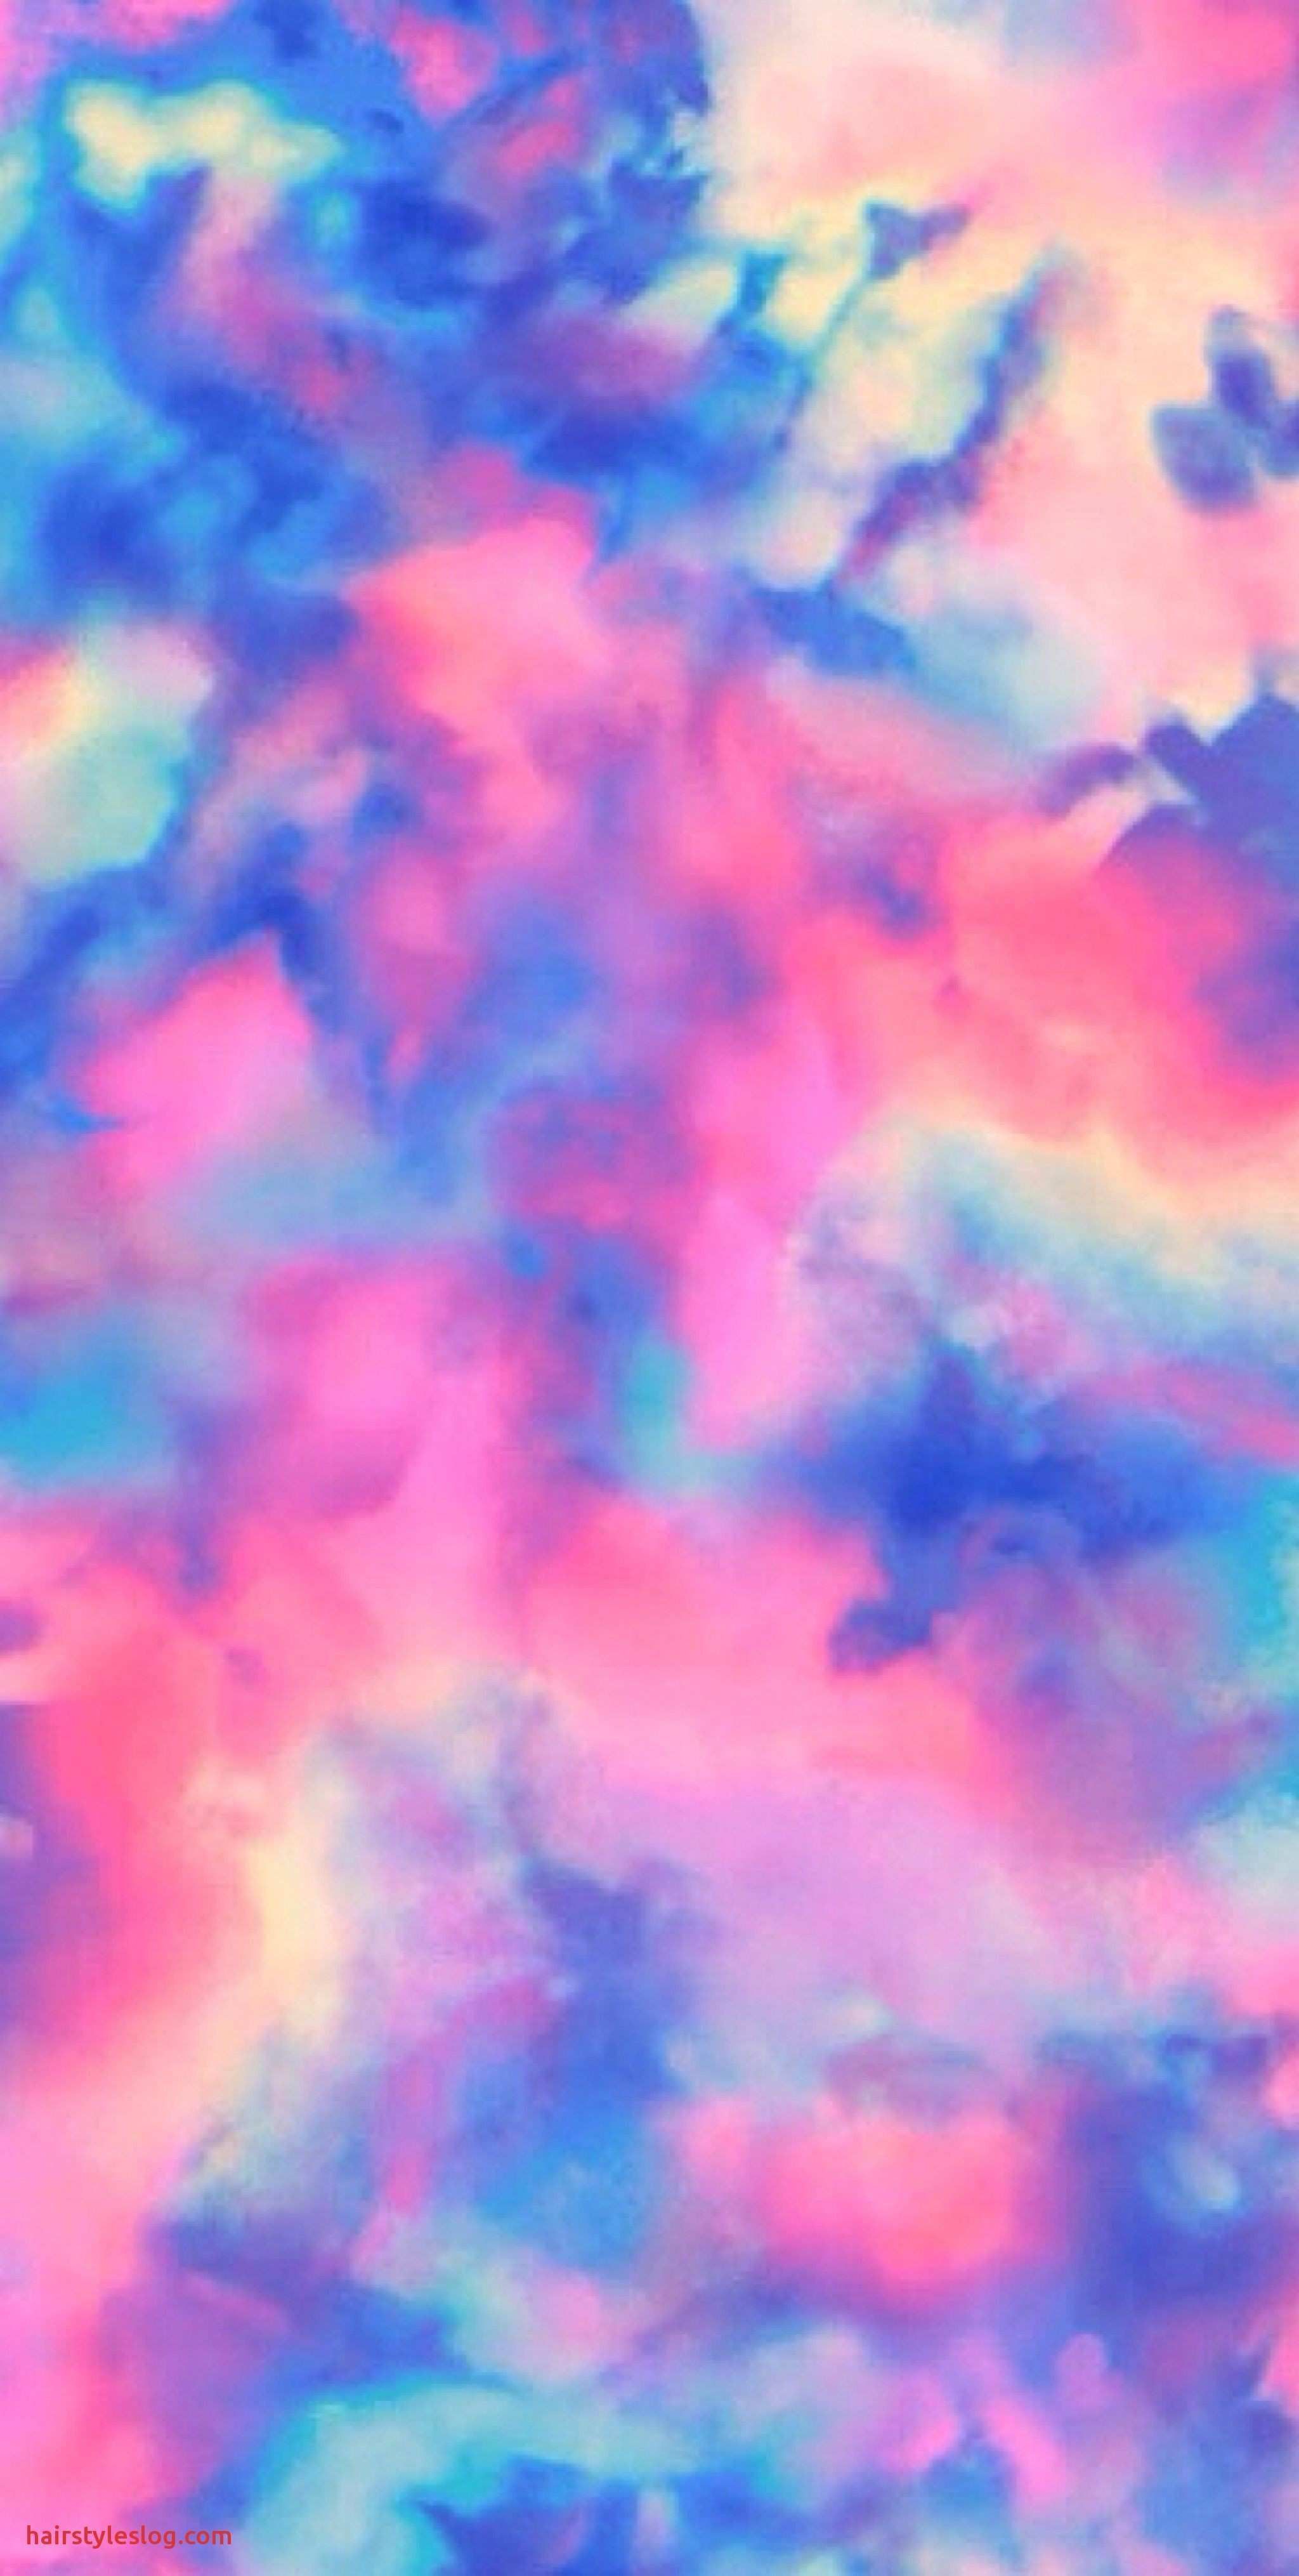 Sky, Blue, Cloud, Pink, Purple, Atmosphere. Tie dye wallpaper